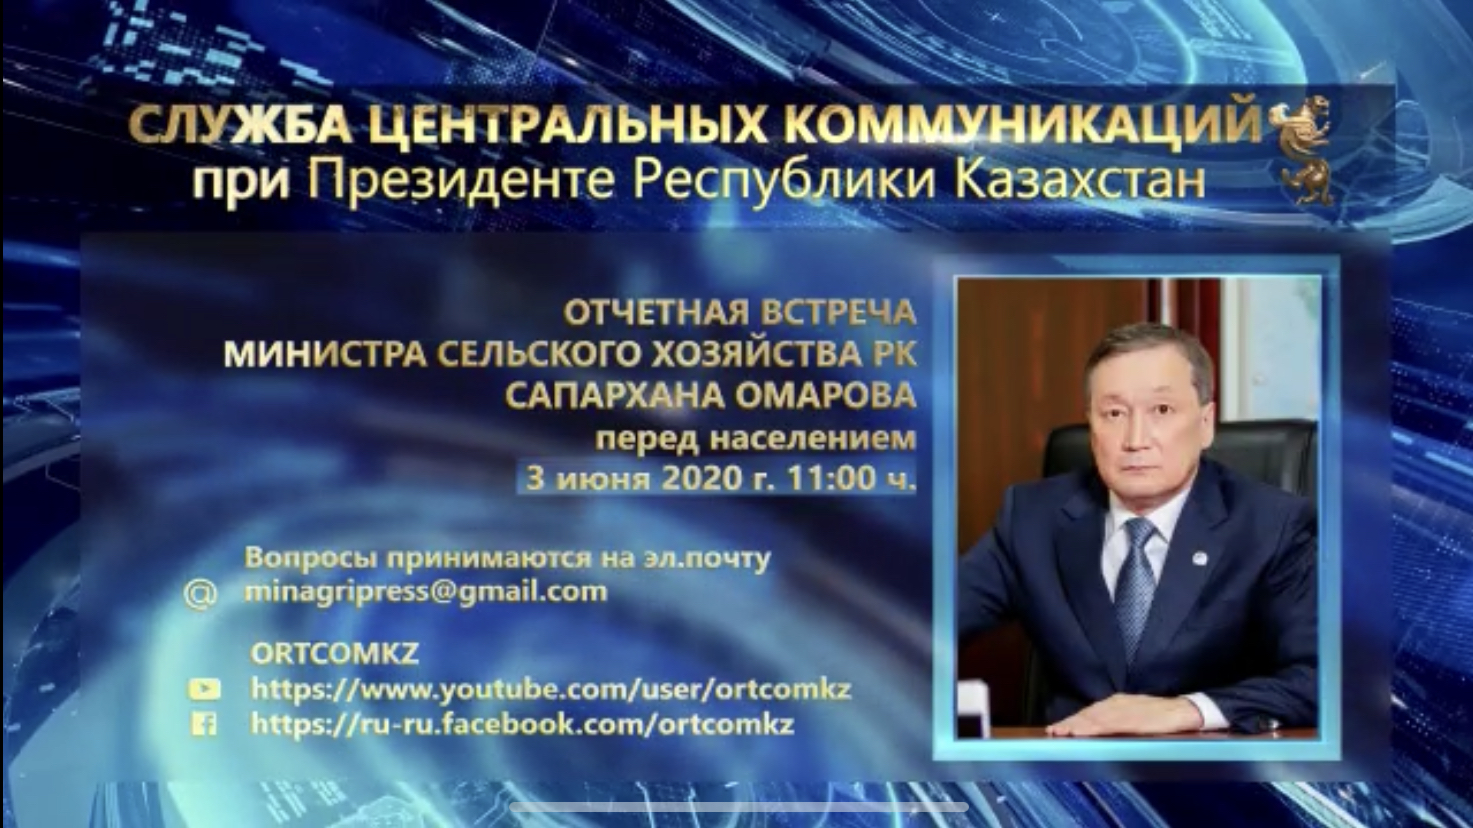 ОБЪЯВЛЕНИЕ о проведении отчетной встречи министра сельского хозяйства Республики Казахстан с населением